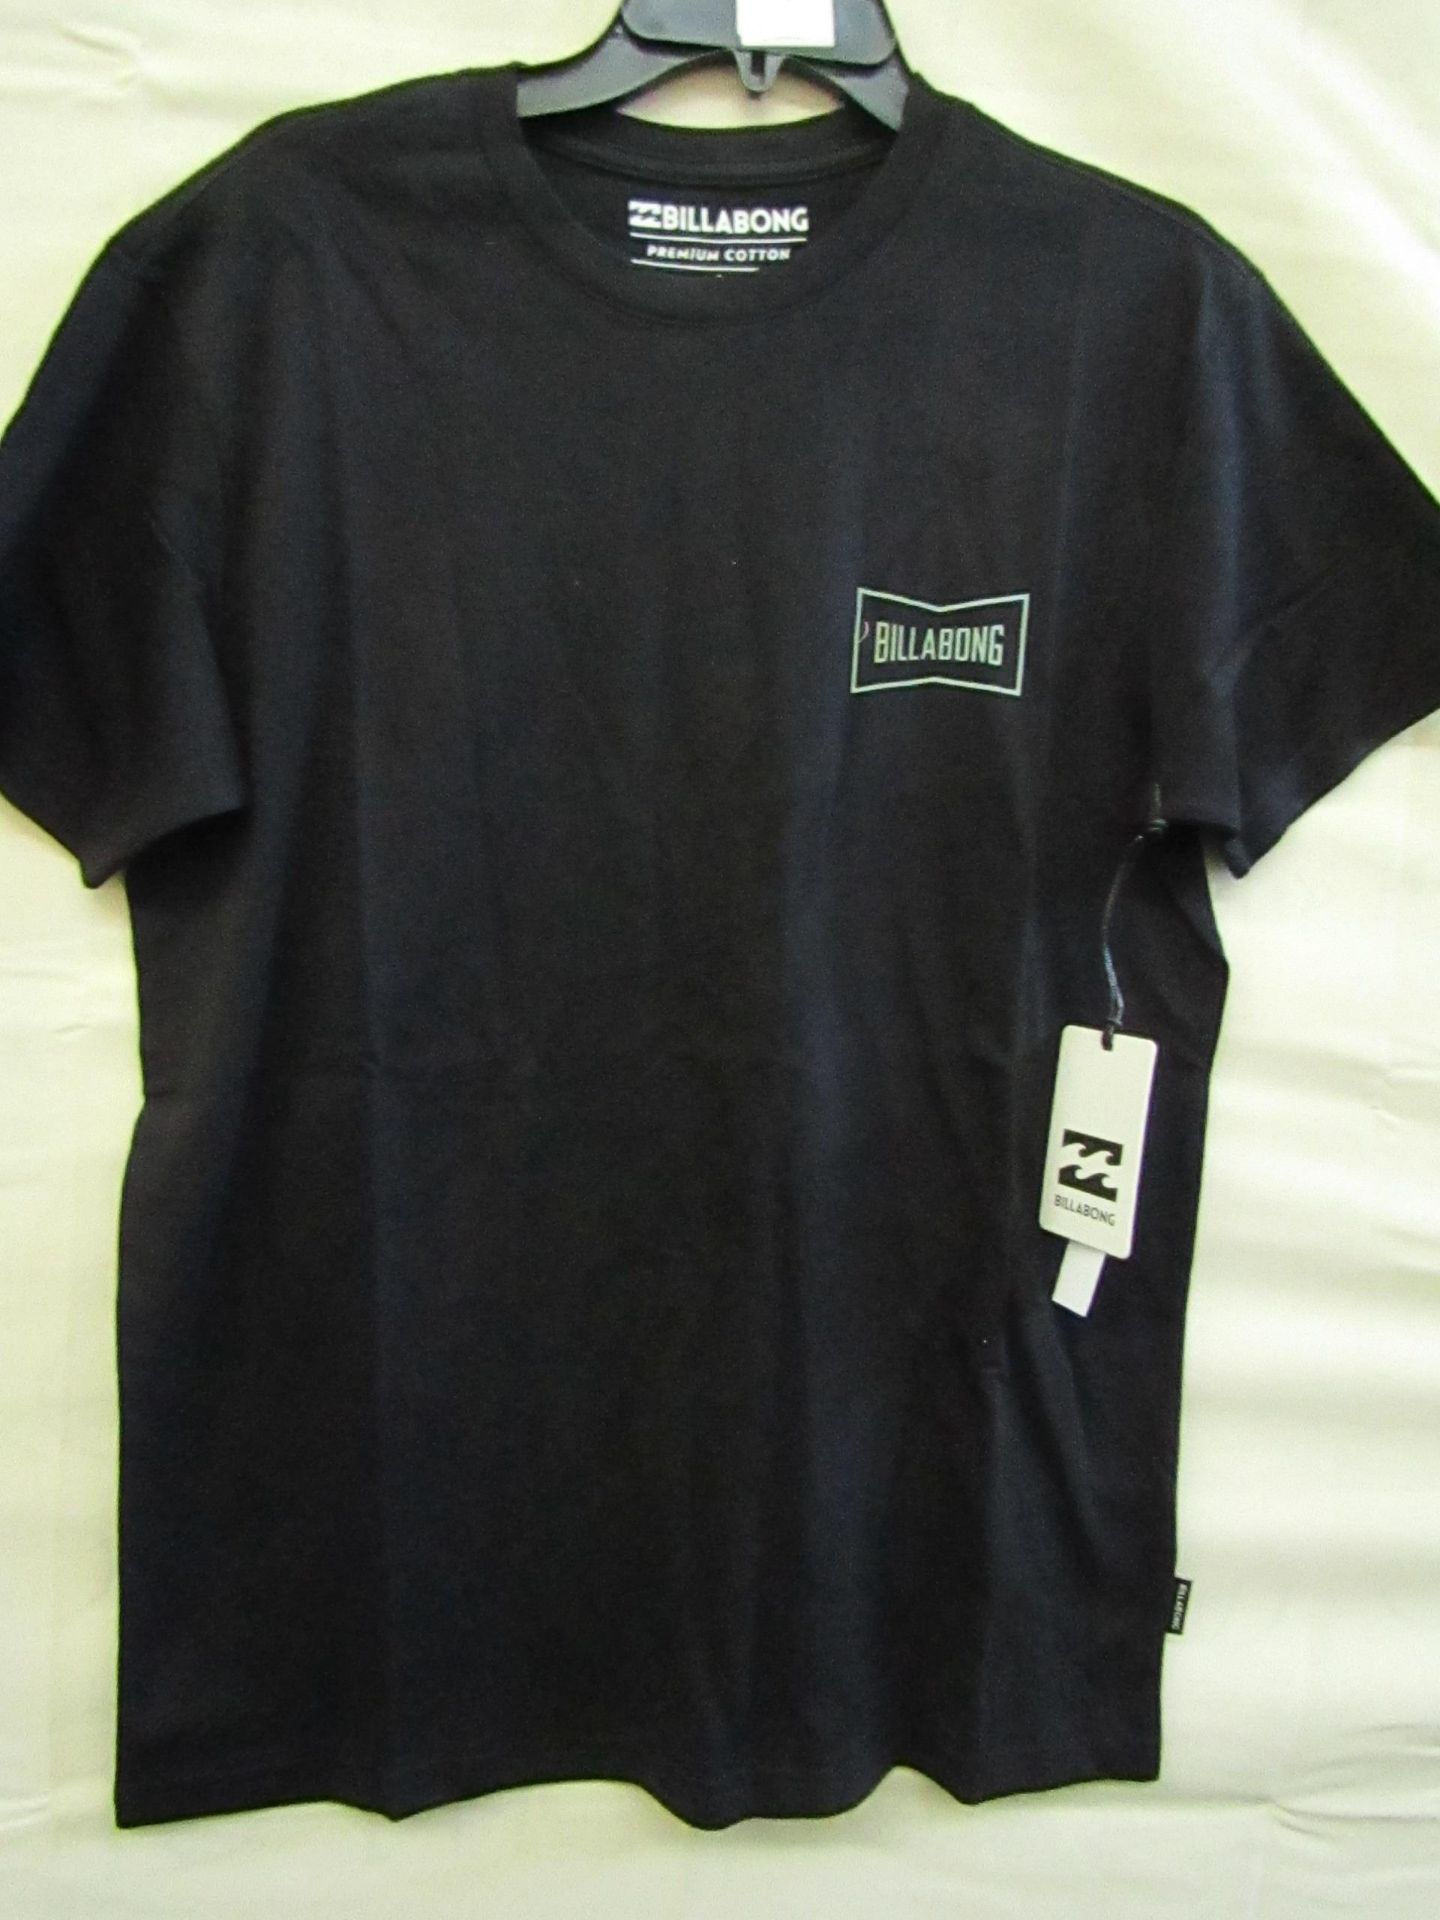 Billabong T/Shirt Black Size S New & Packaged